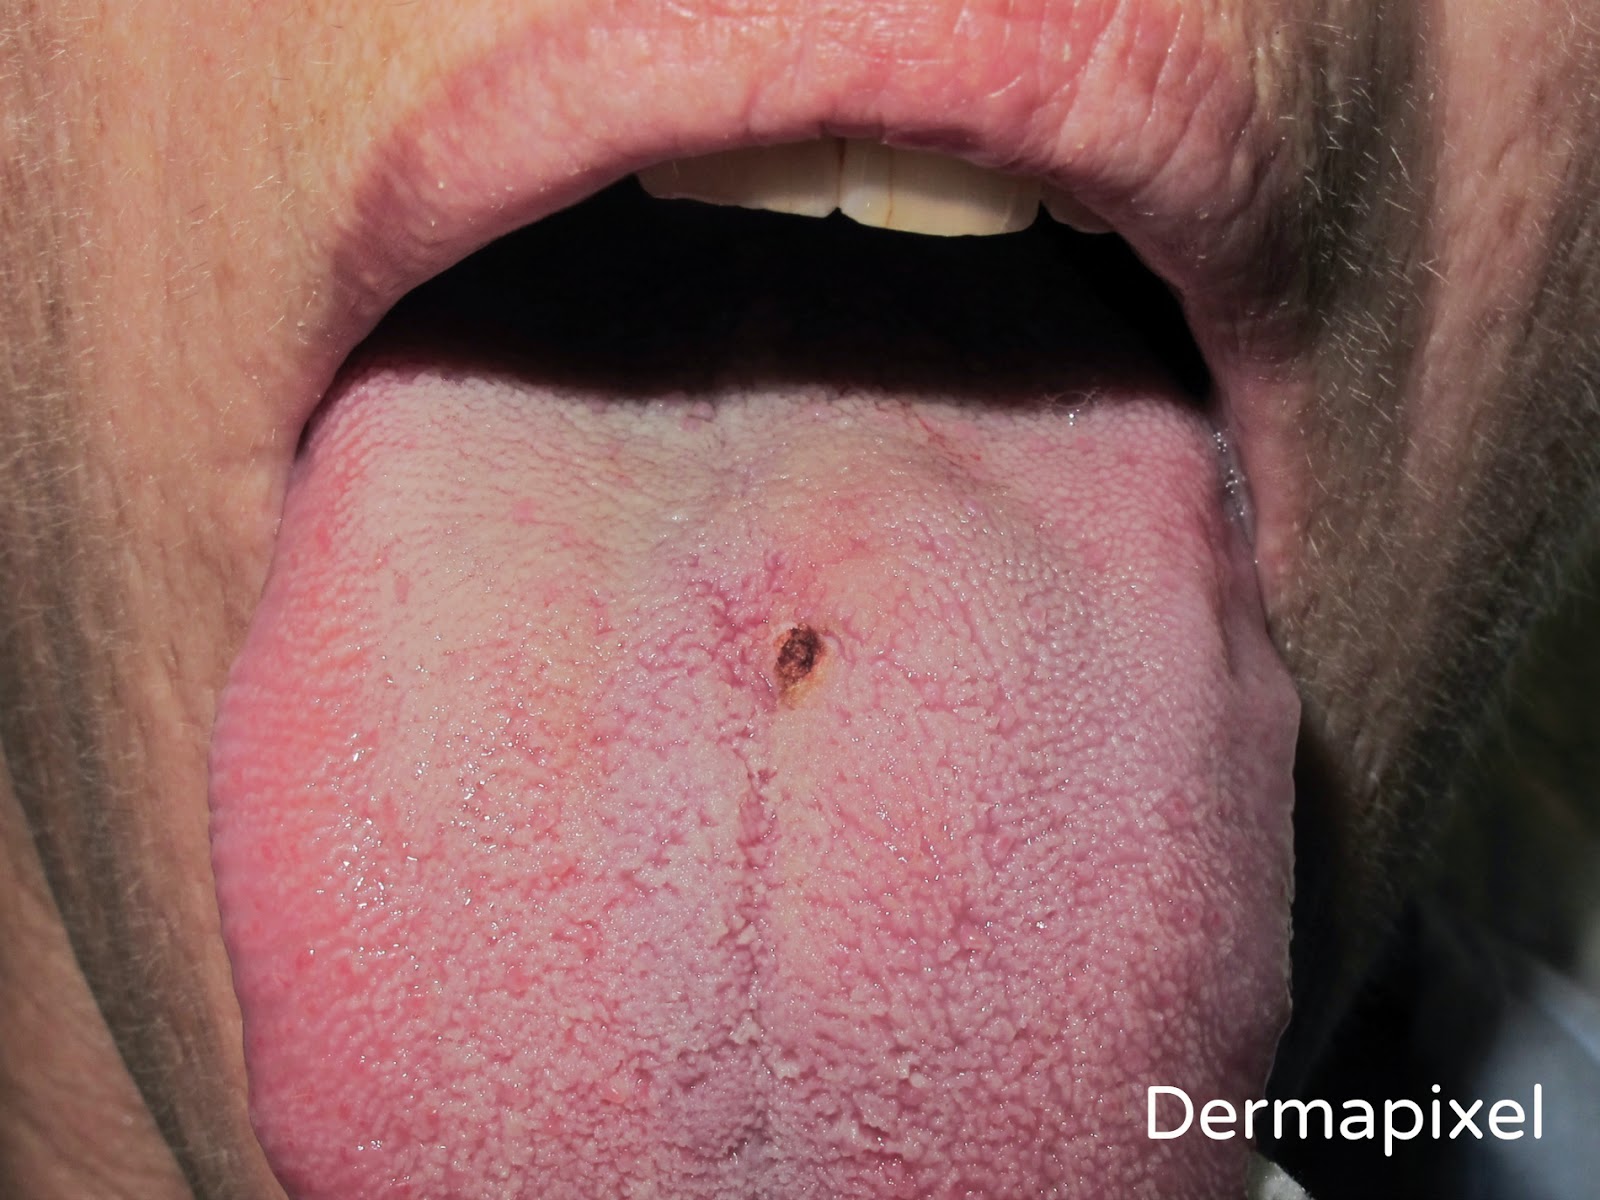 lesion de papiloma en boca hpv lezyon nedir